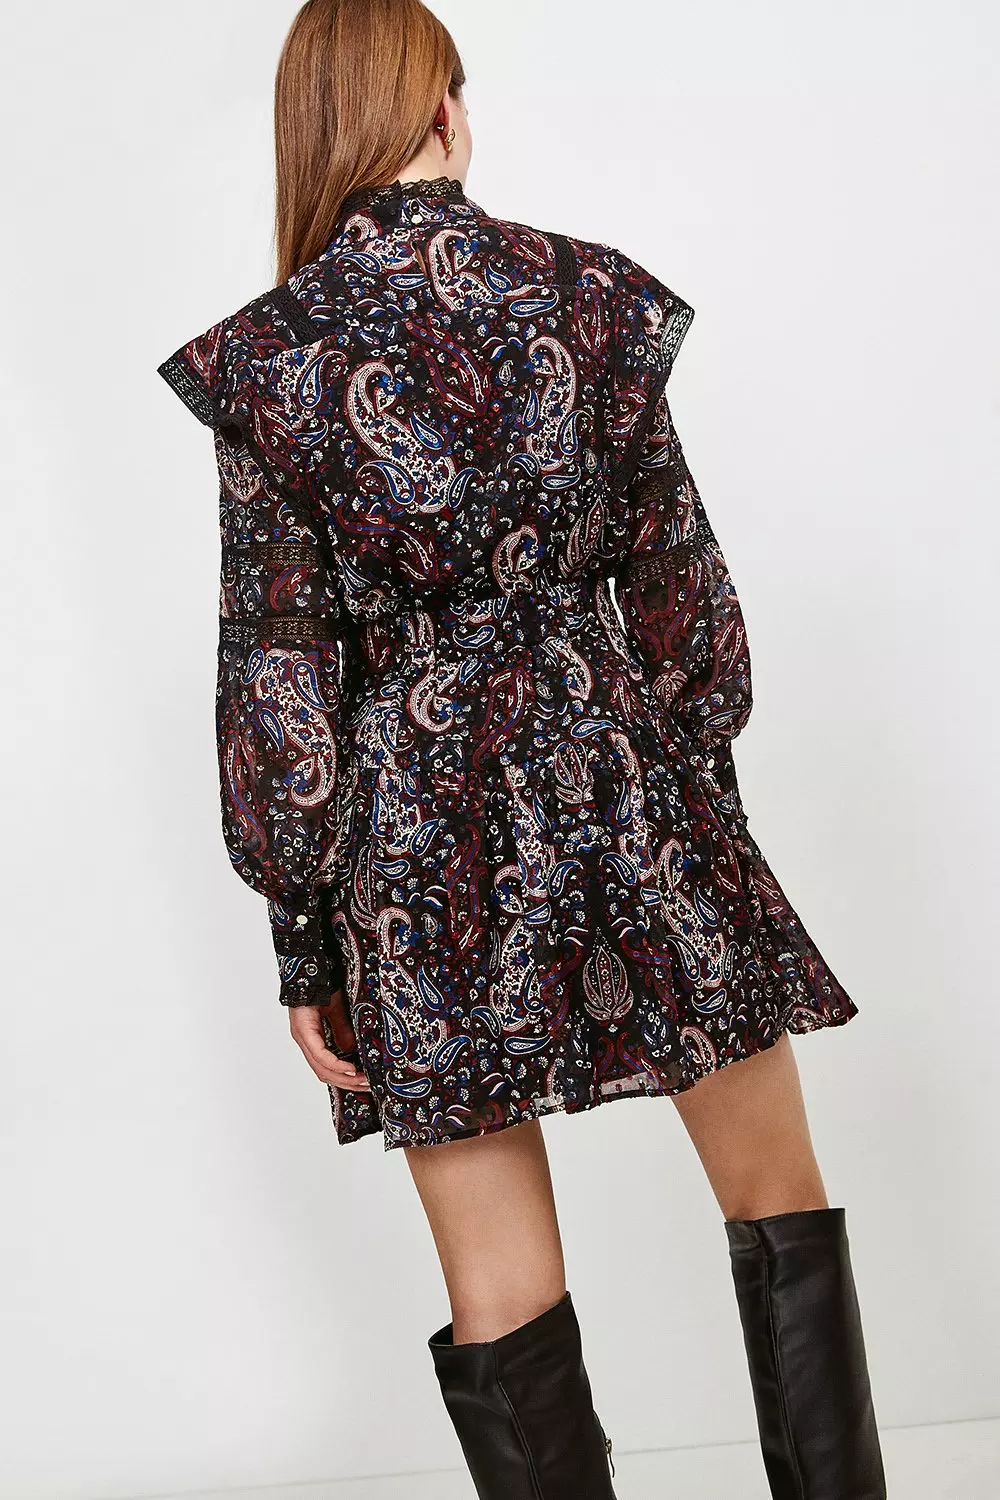 Textured Paisley Print Lace Detail Dress | Karen Millen